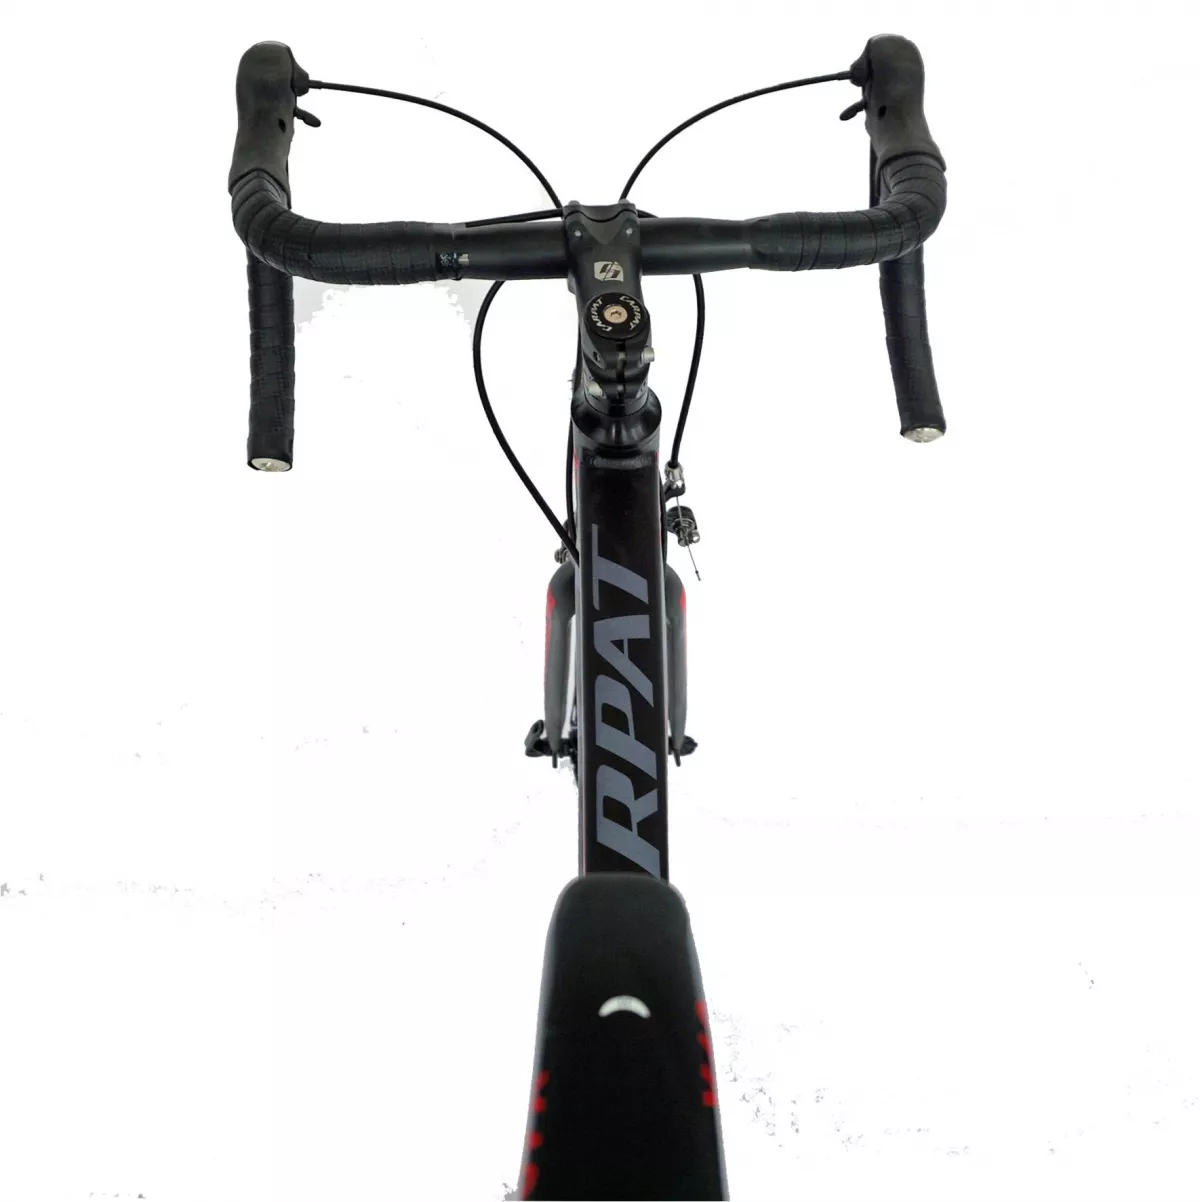 Bicicleta Road  28" CARPAT C2874C, cadru aluminiu, transmisie SHIMANO 14 viteze, culoare negru/rosu - RESIGILATA